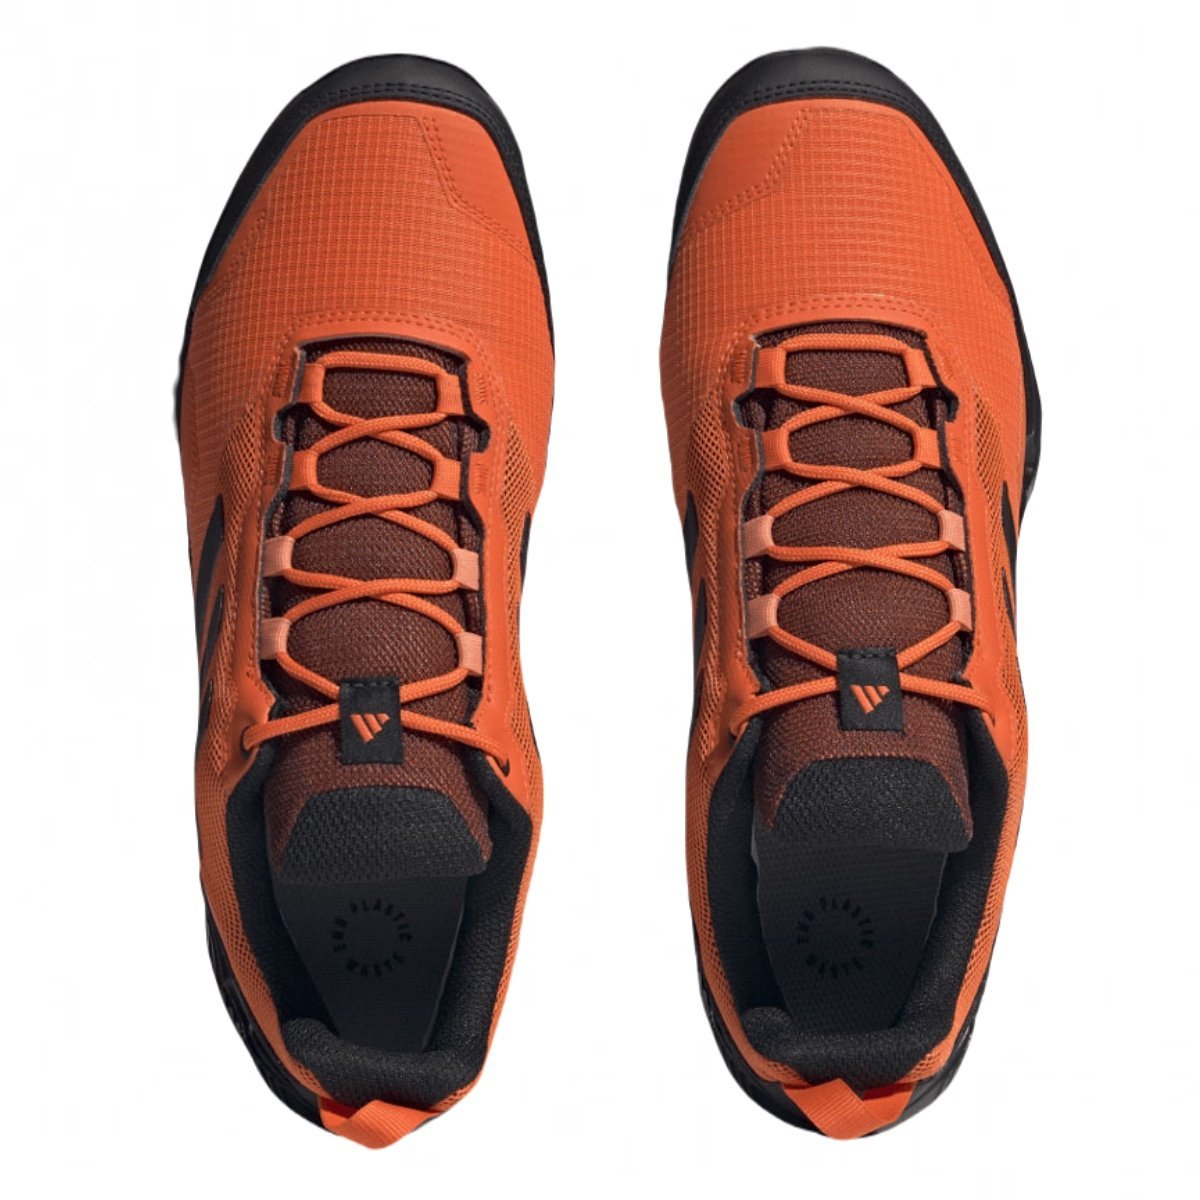 Obuv Adidas Terrex Eastrail GTX M - čierna/oranžová